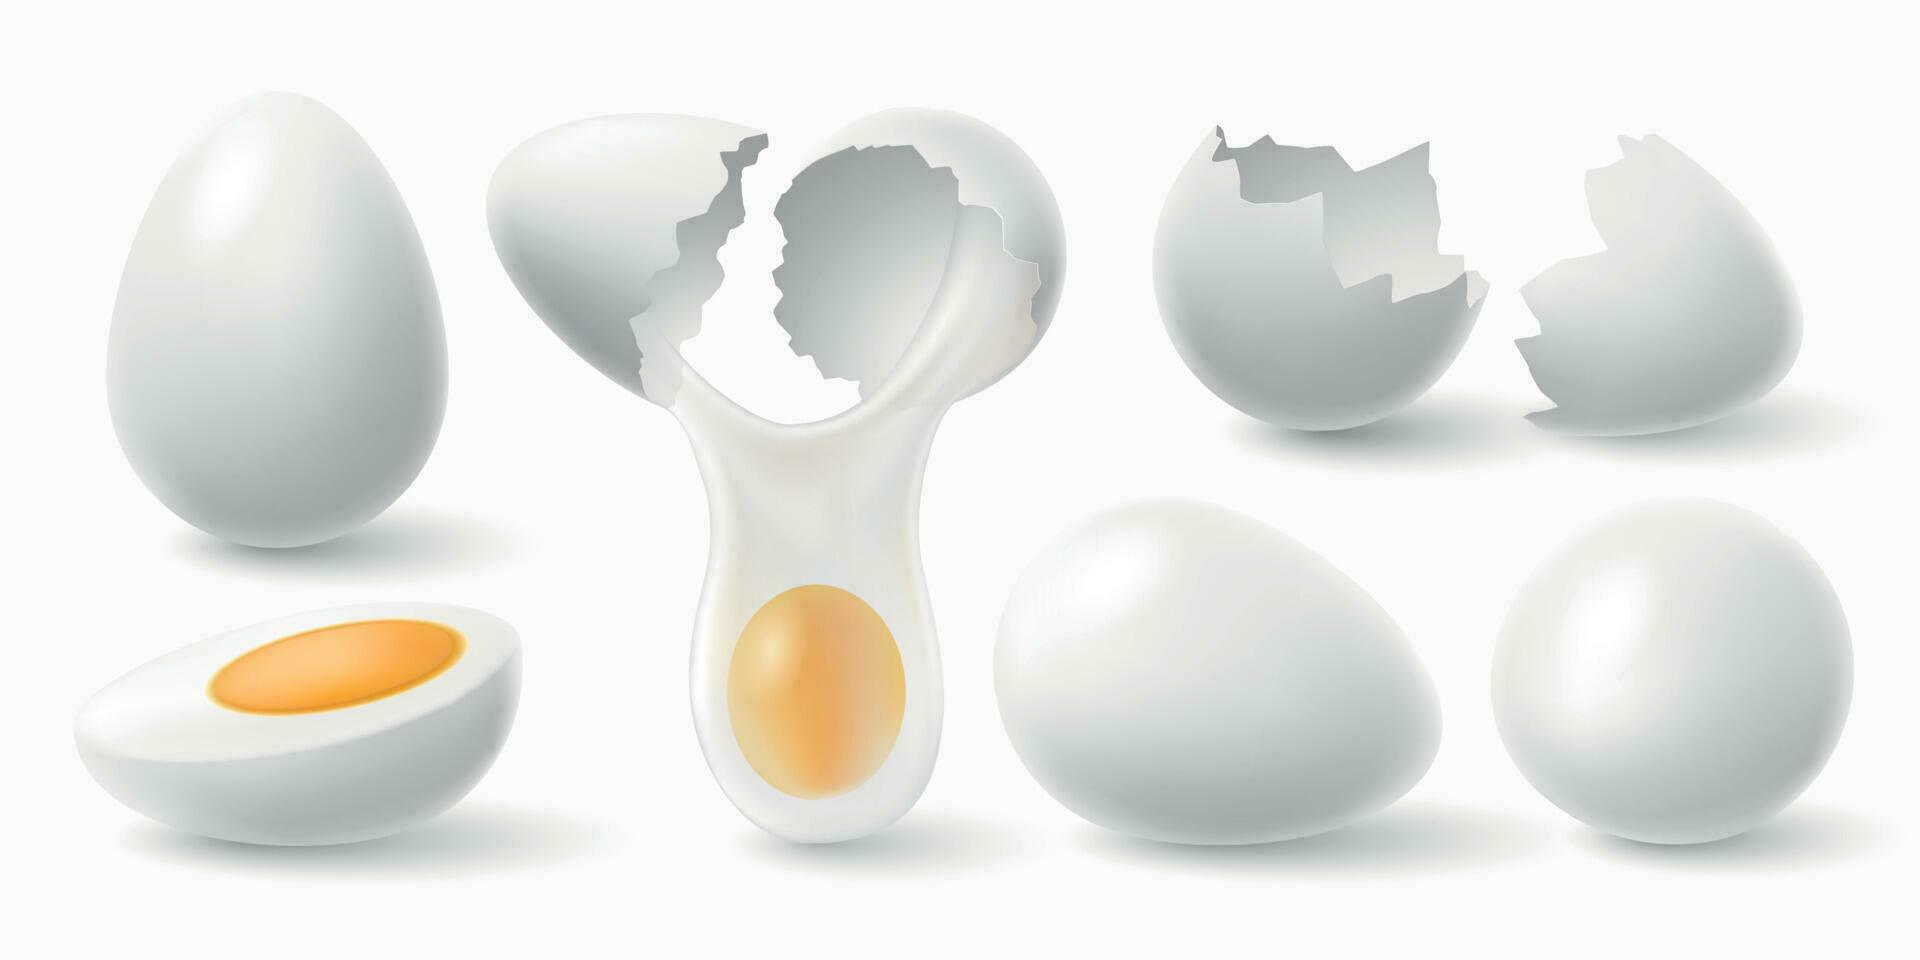 kip eieren. wit Pasen ei, gebarsten eierschaal en gekookt ei 3d realistisch vector illustratie reeks